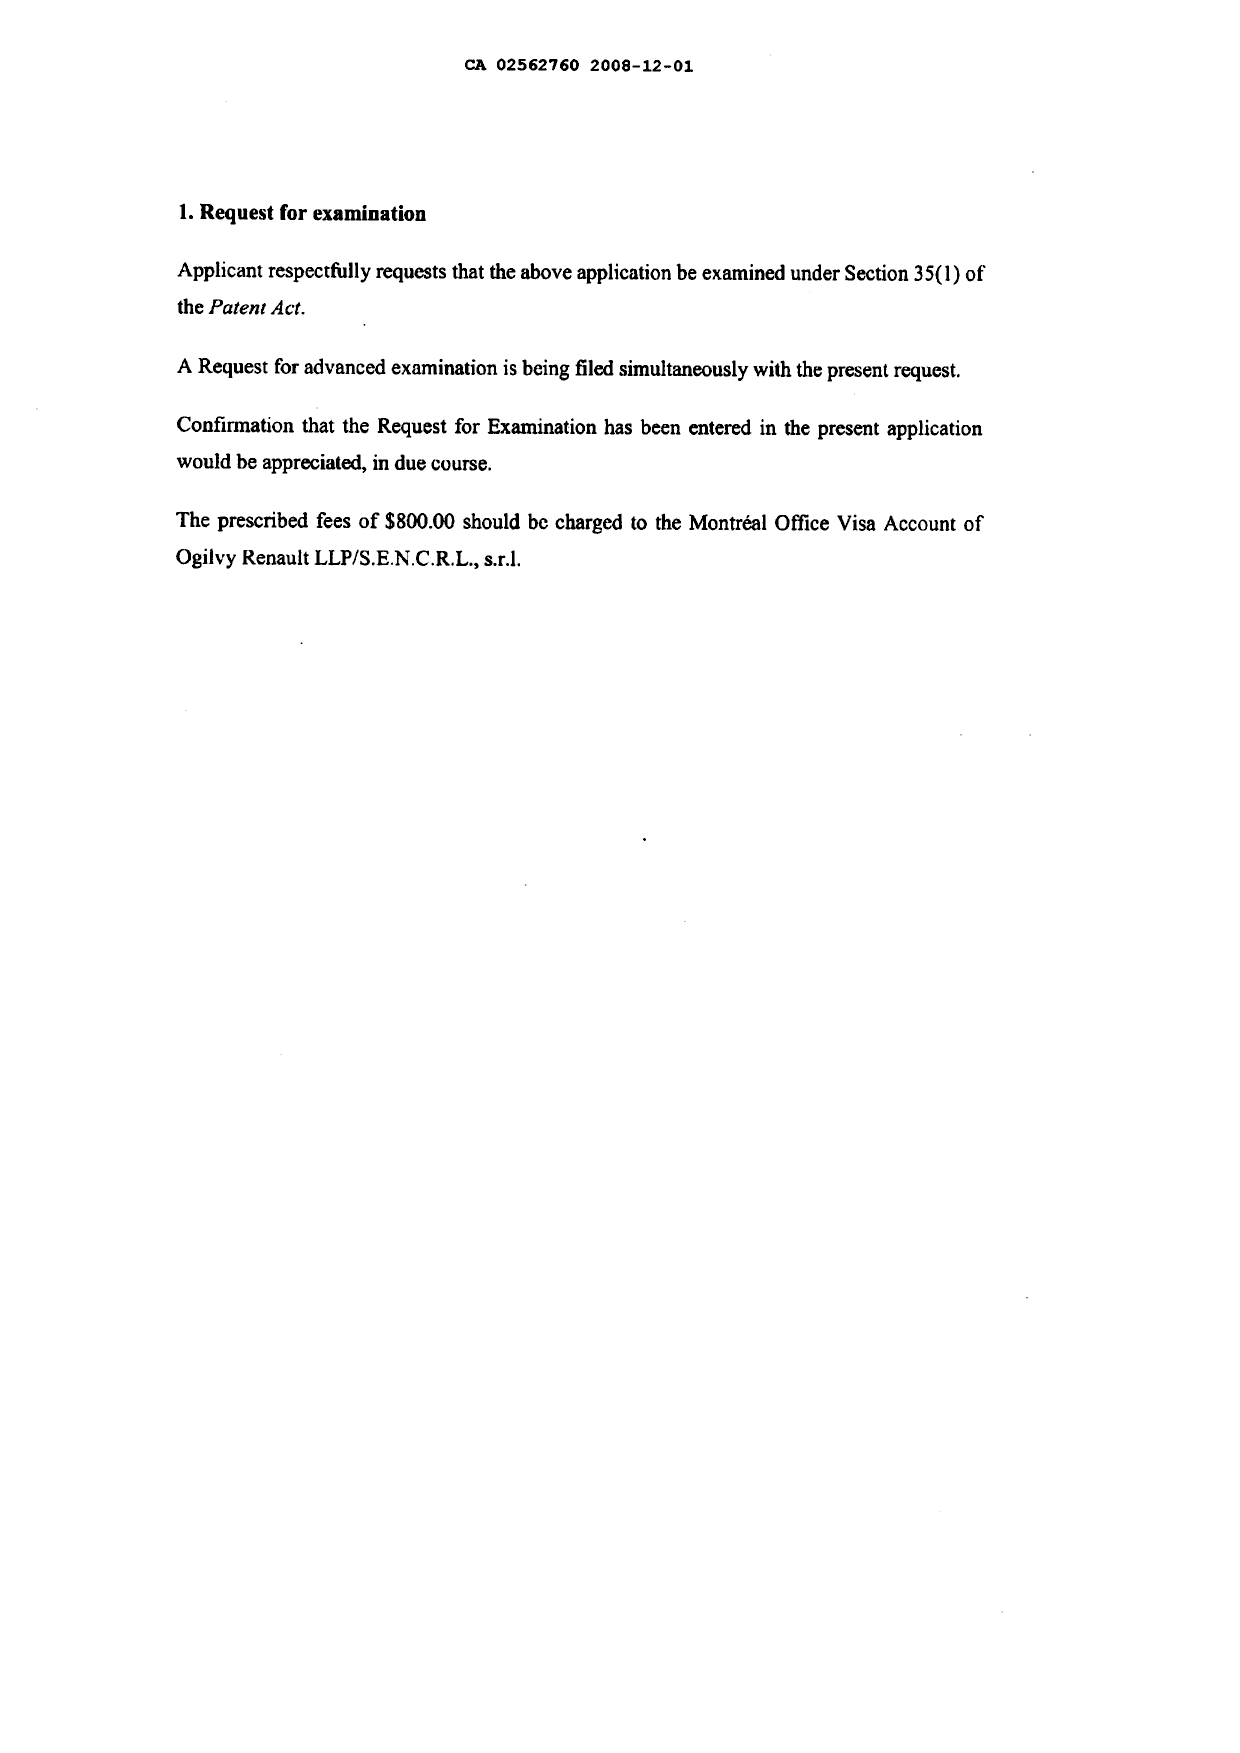 Document de brevet canadien 2562760. Poursuite-Amendment 20081216. Image 3 de 5